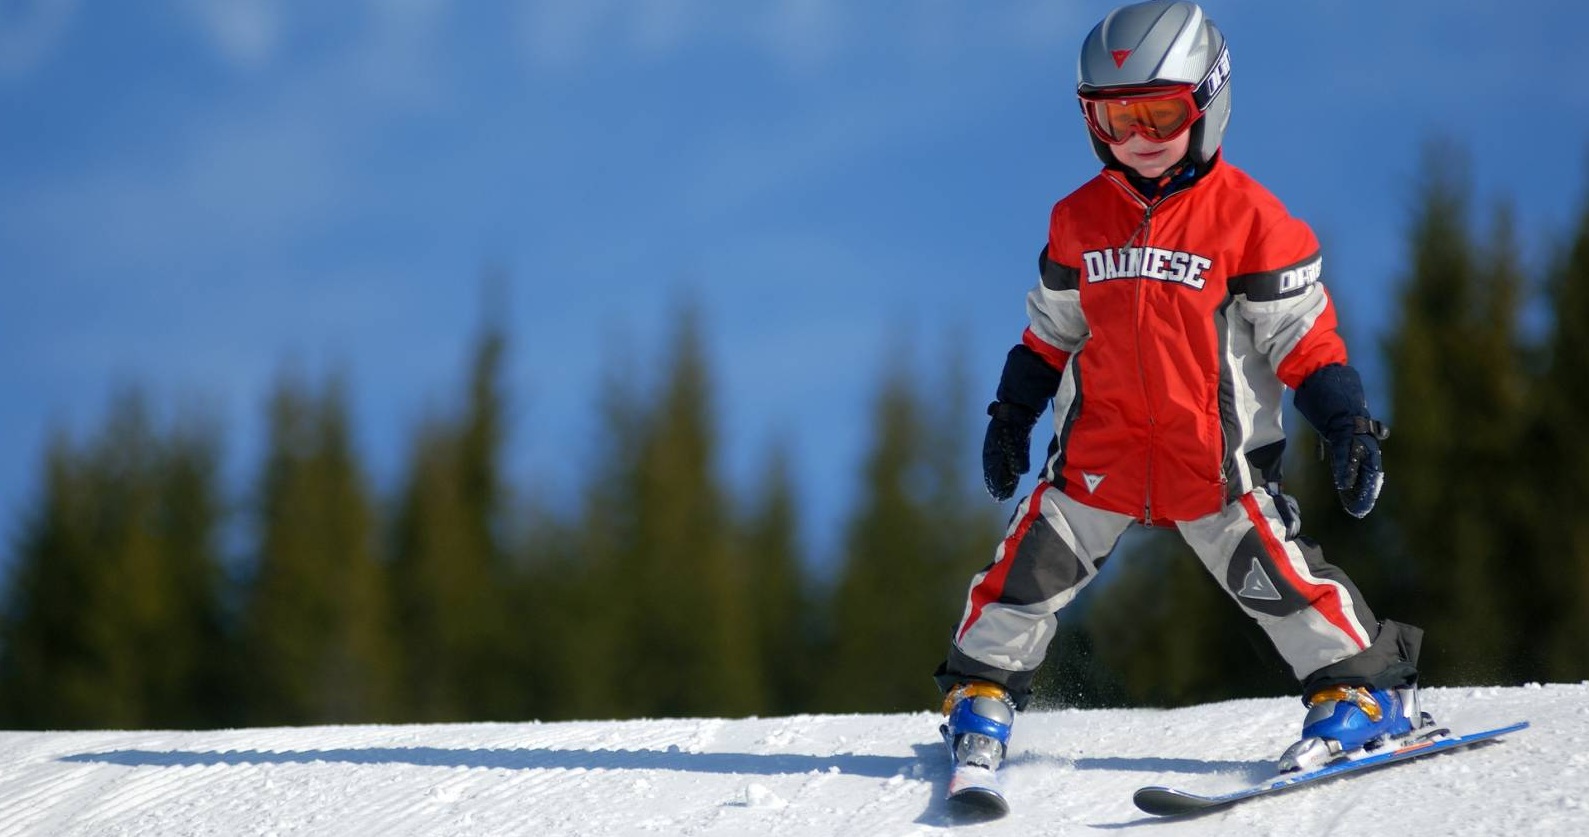 Маленькие лыжники. Дети на горных лыжах. Дети горнолыжники. Горнолыжный спорт дети. Детский горнолыжный спорт.